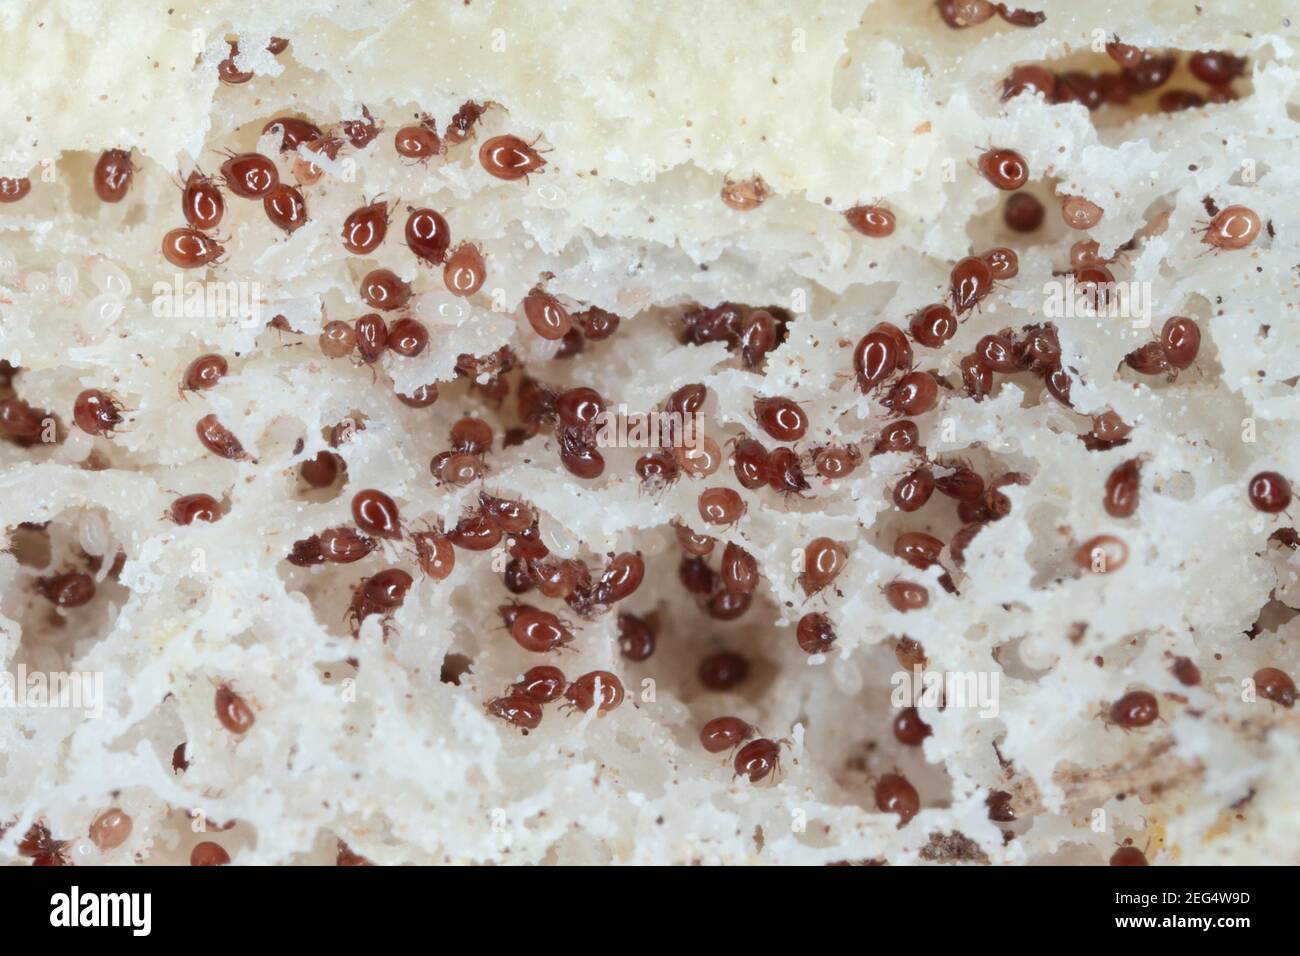 Vergrößerung von Milben aus der Acaridae-Familie auf schimmeligen Broten. Stockfoto